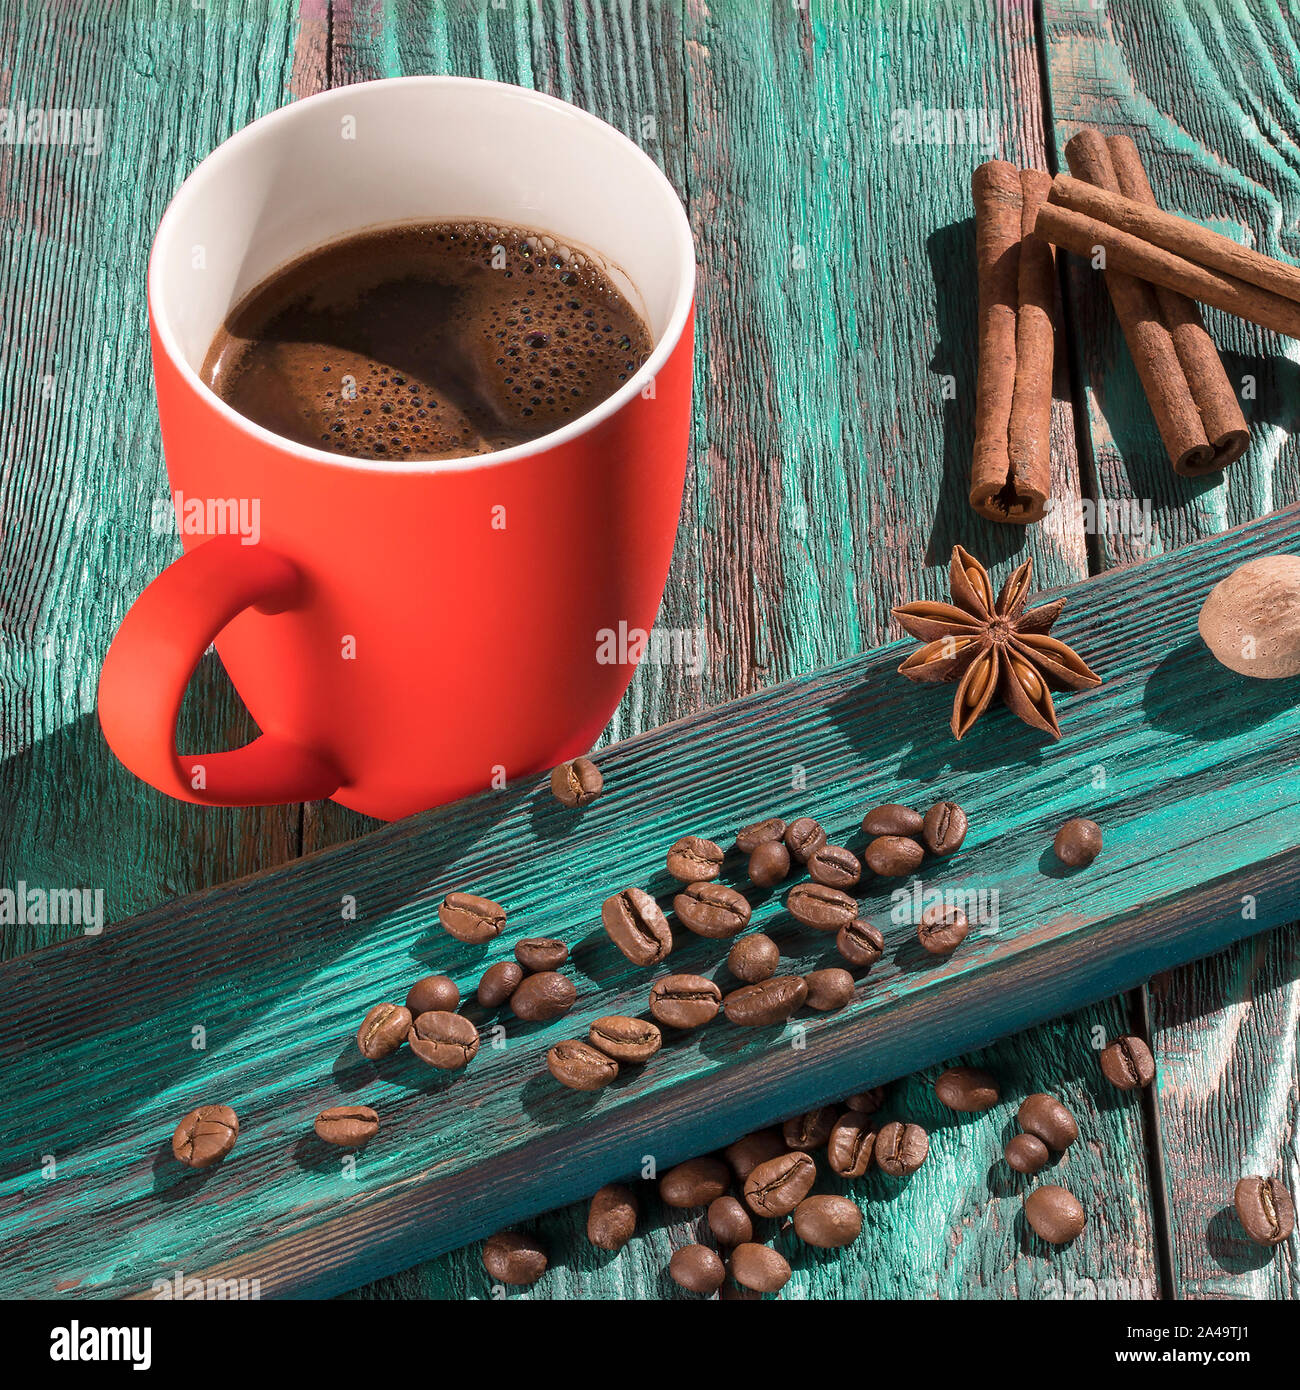 Une tasse de café fraîchement torréfié et de haricots sur une table en bois rustique. Matin ensoleillé. Coupe du corail lumineux sur fond bleu turquoise. Image carré Banque D'Images